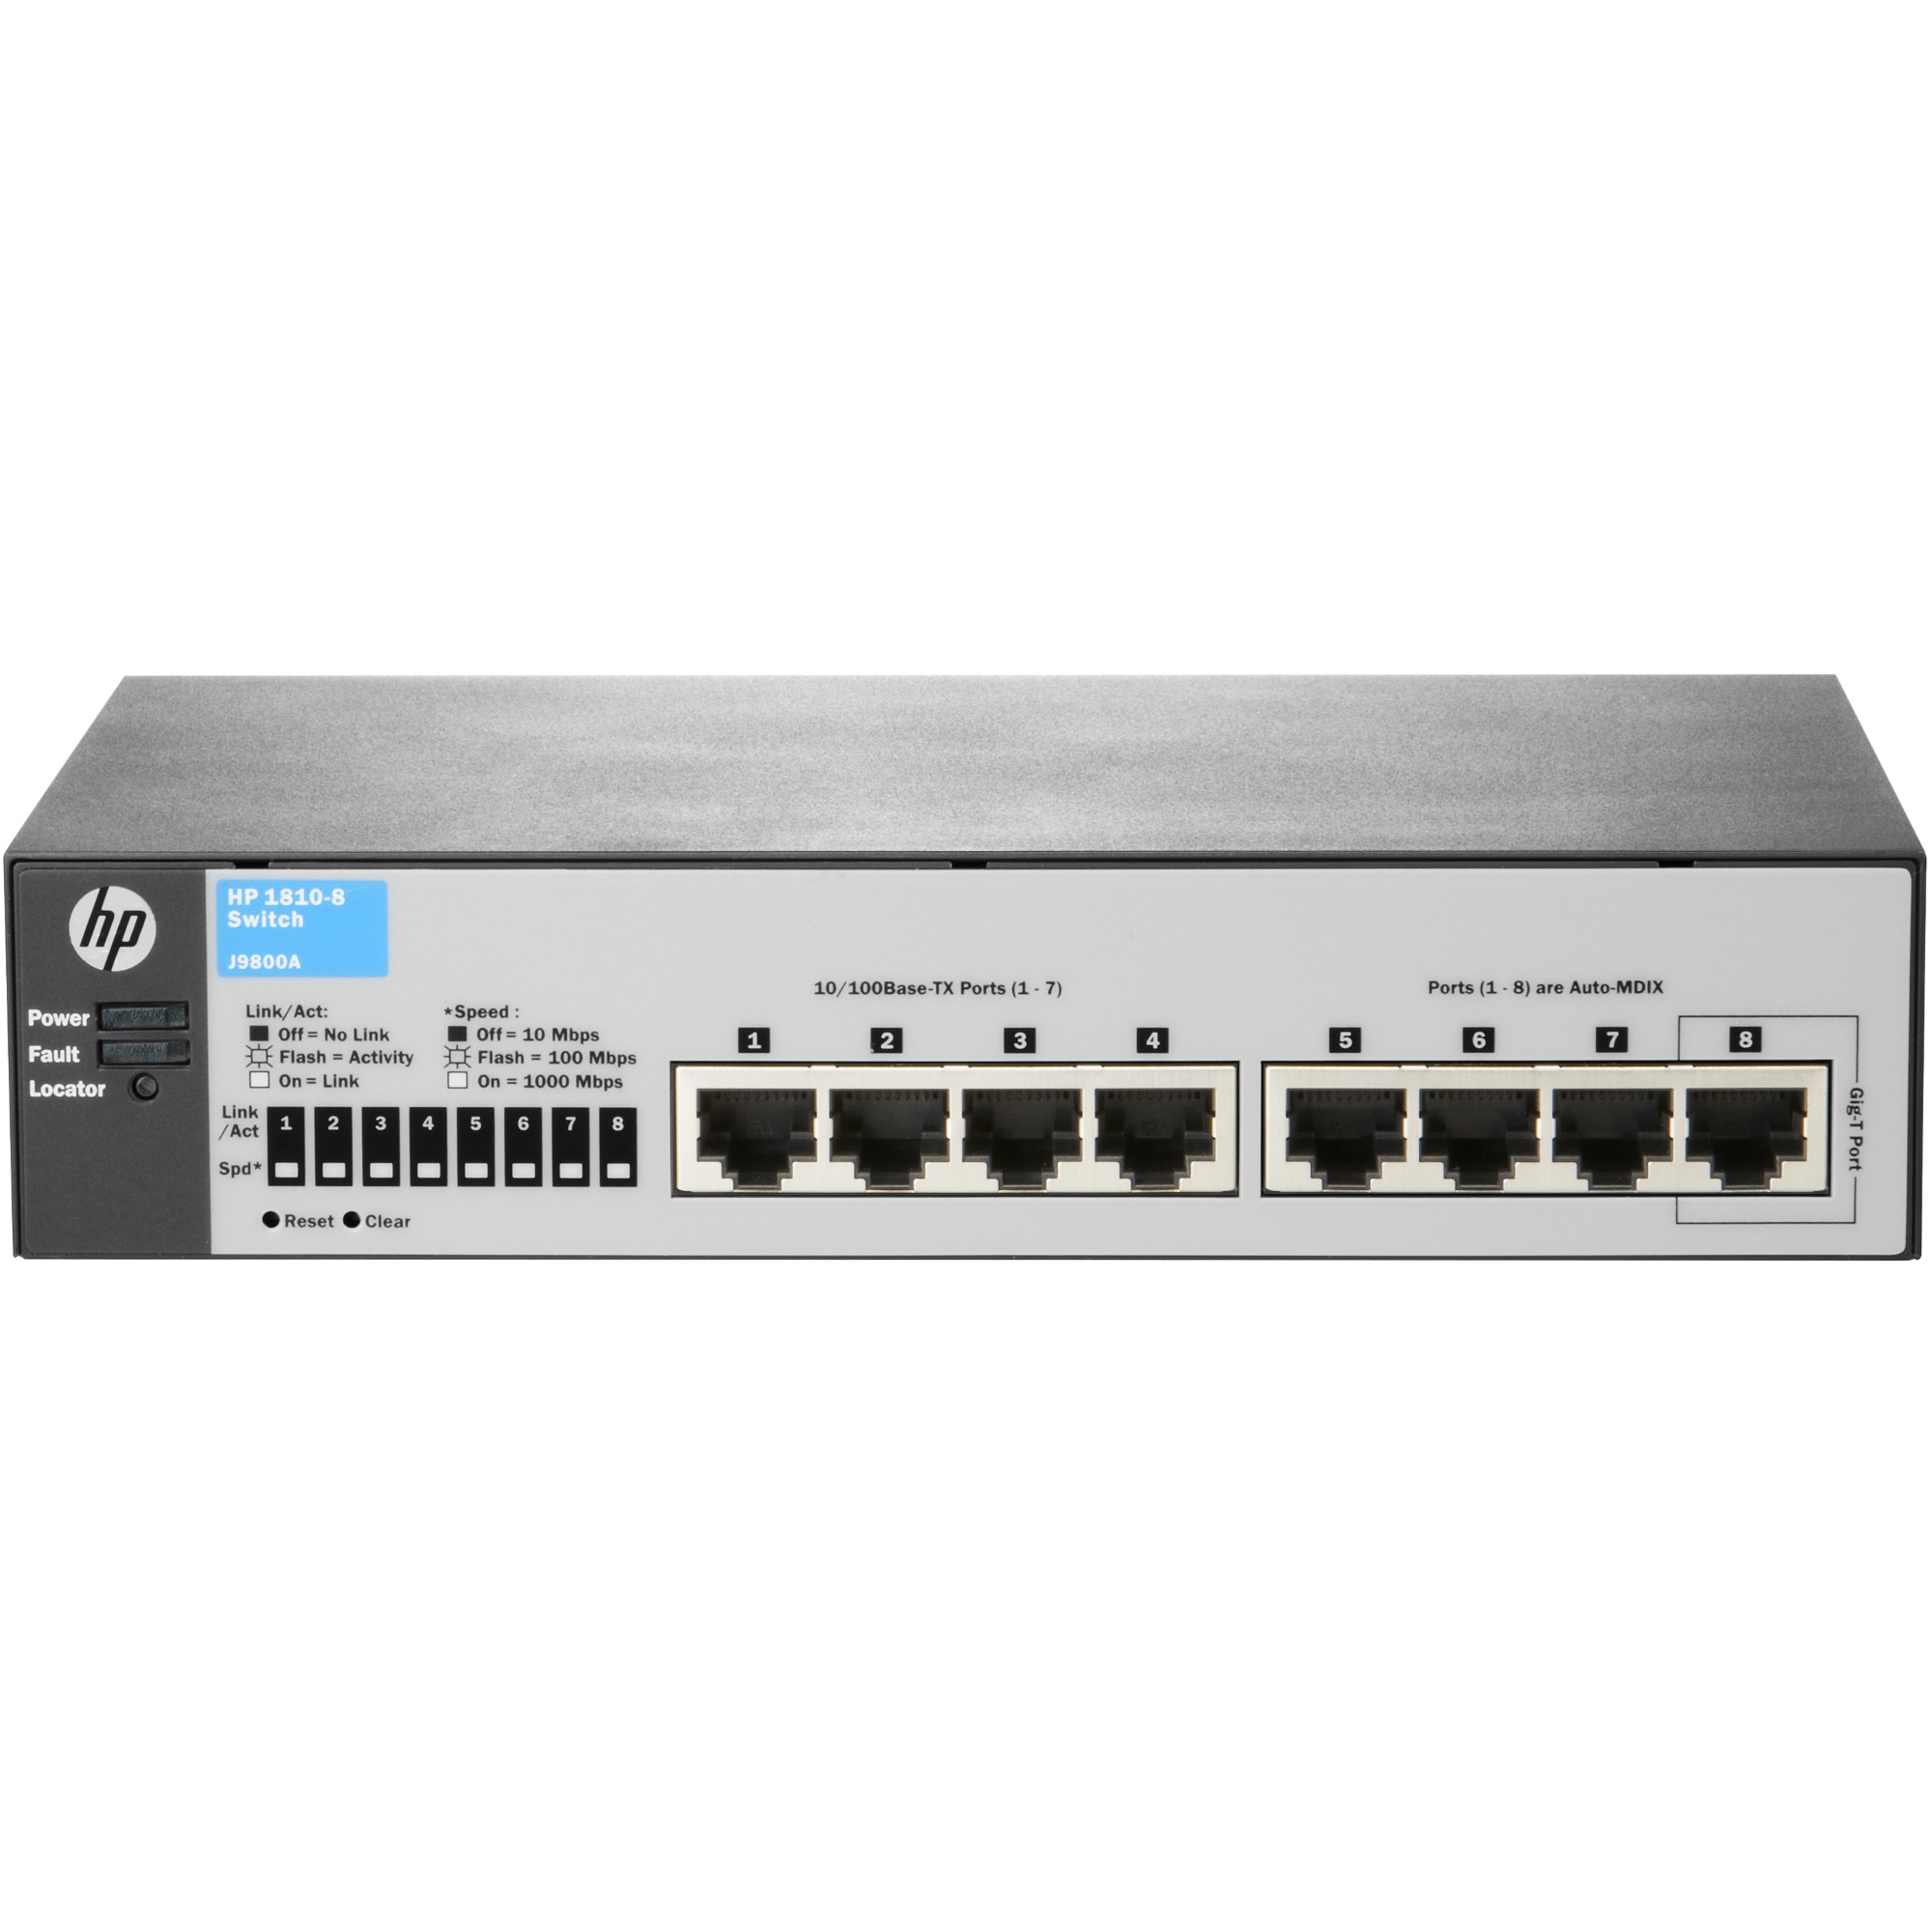  Switch HP 1810-8, 8 porturi, 7 x 10/100, 1 x 10/100/1000 